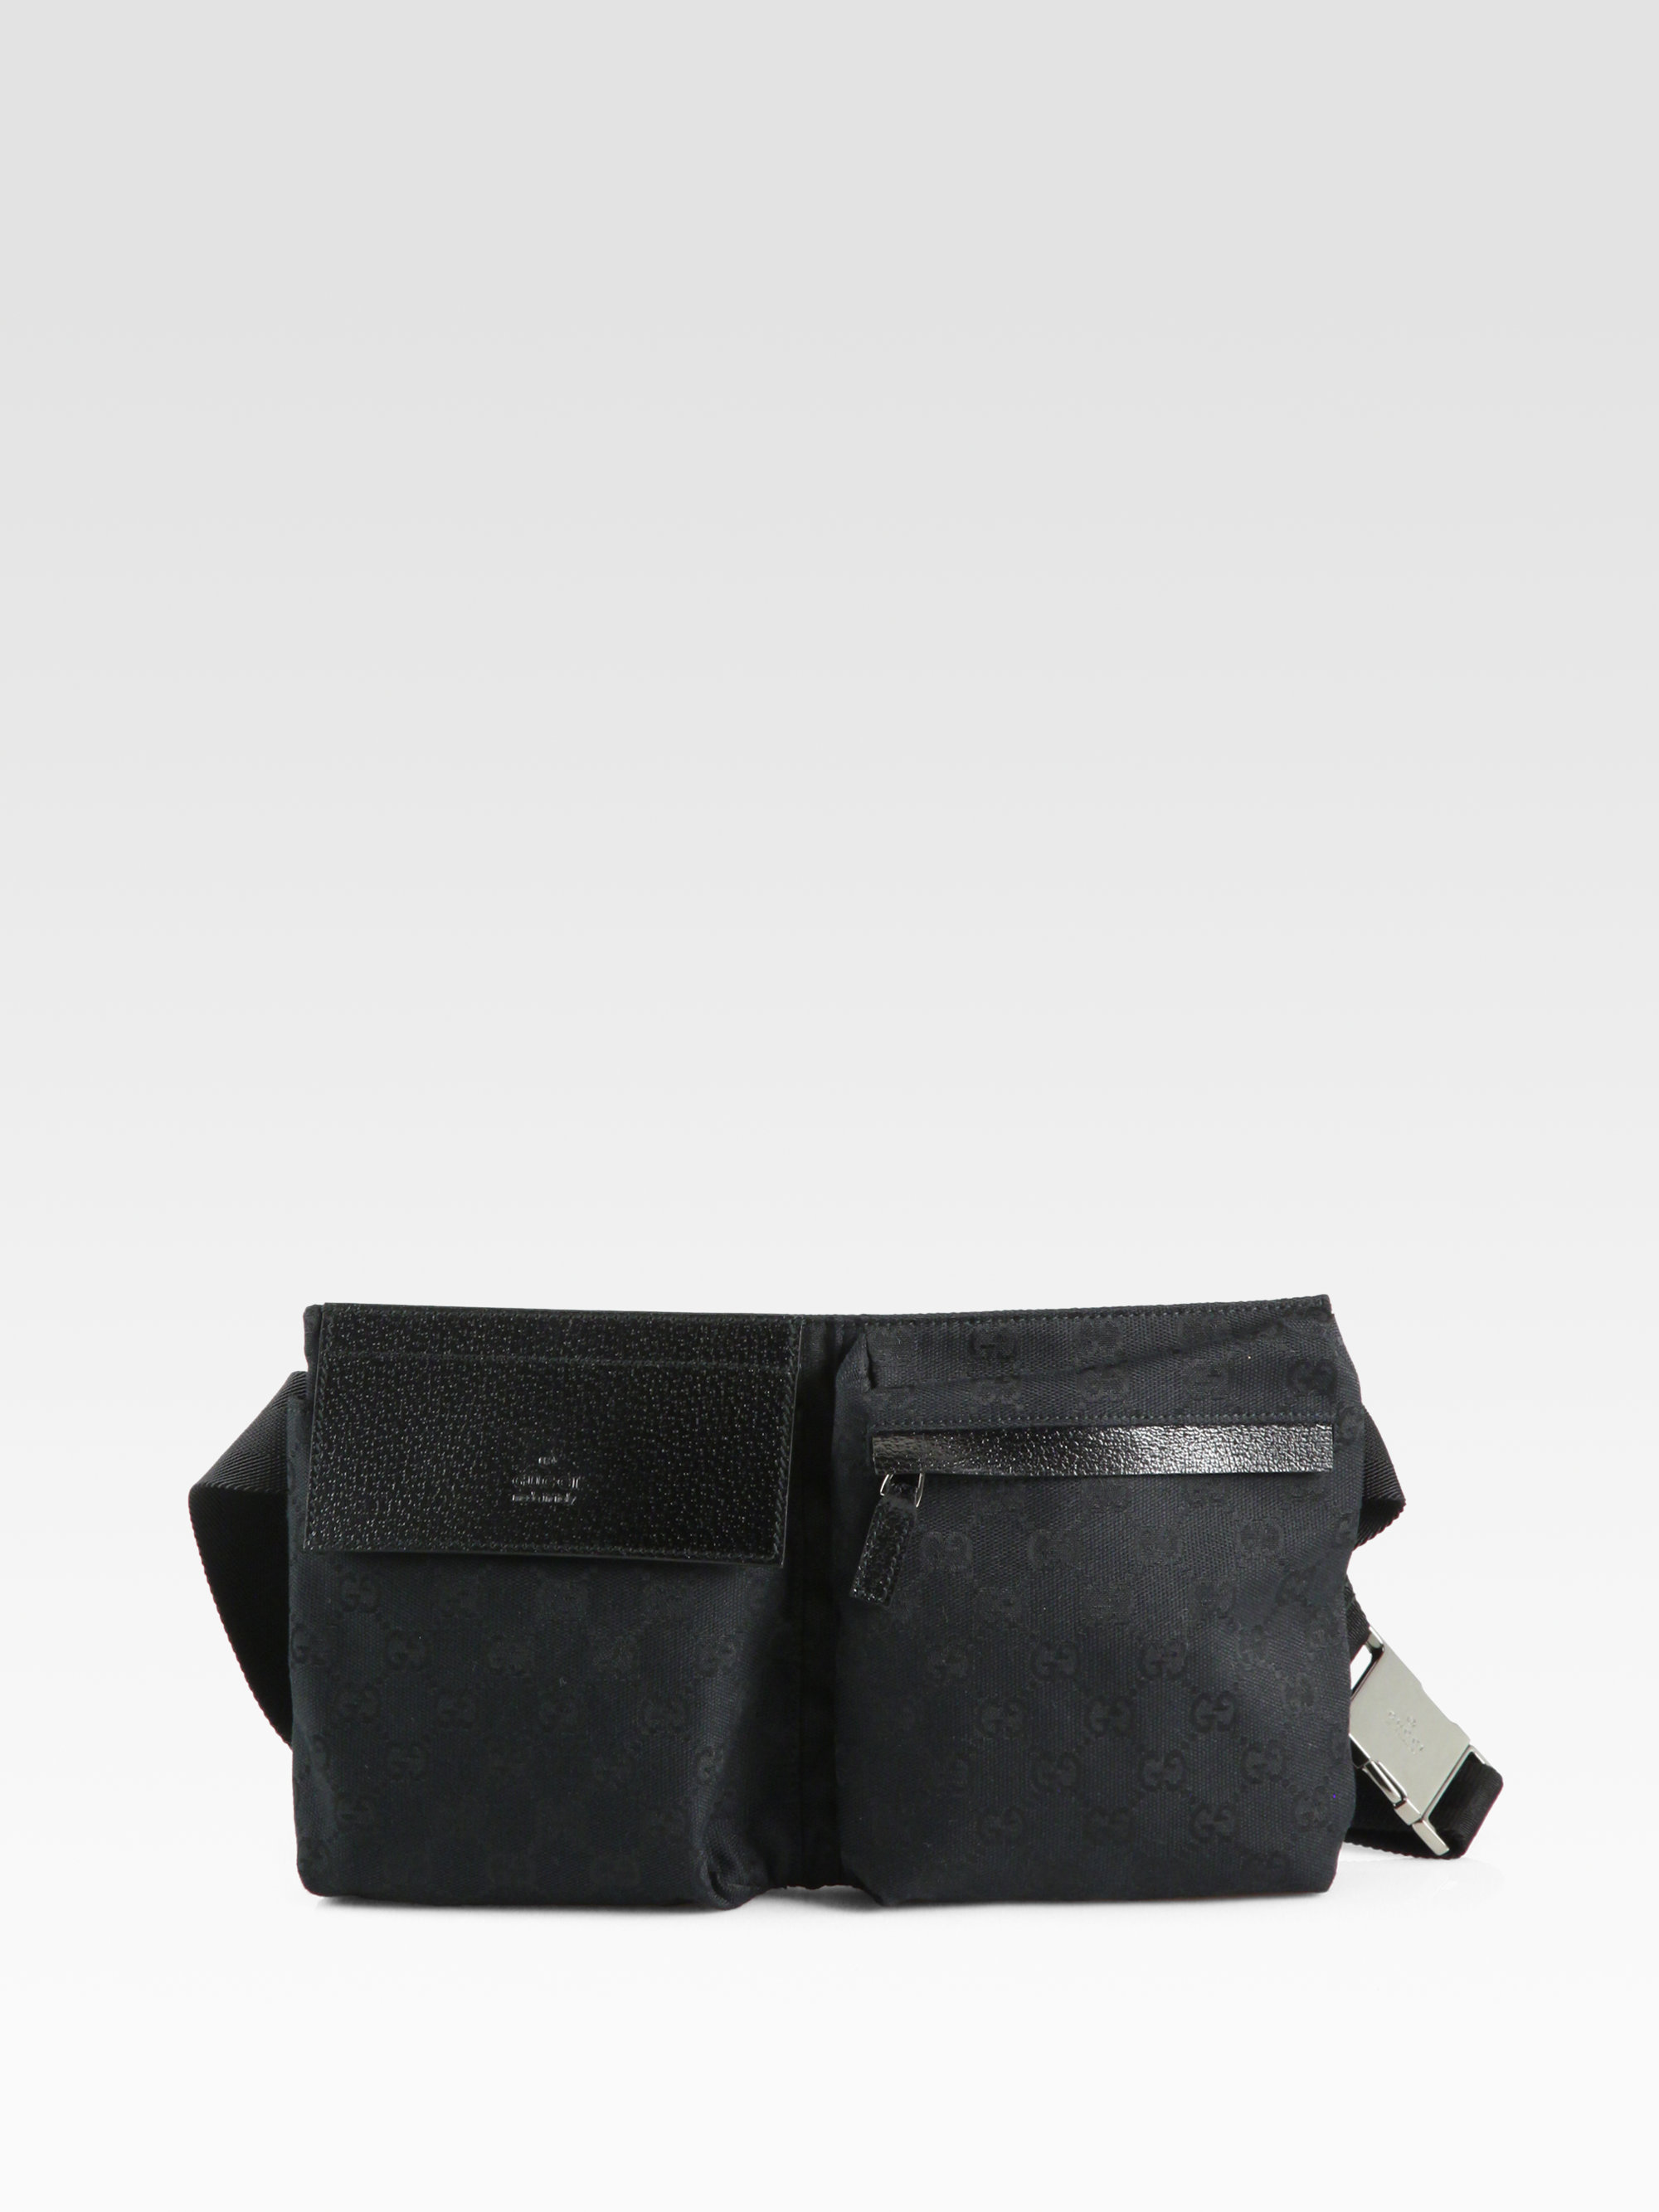 Gucci GG Canvas Belt Bag in Beige (Natural) for Men - Lyst